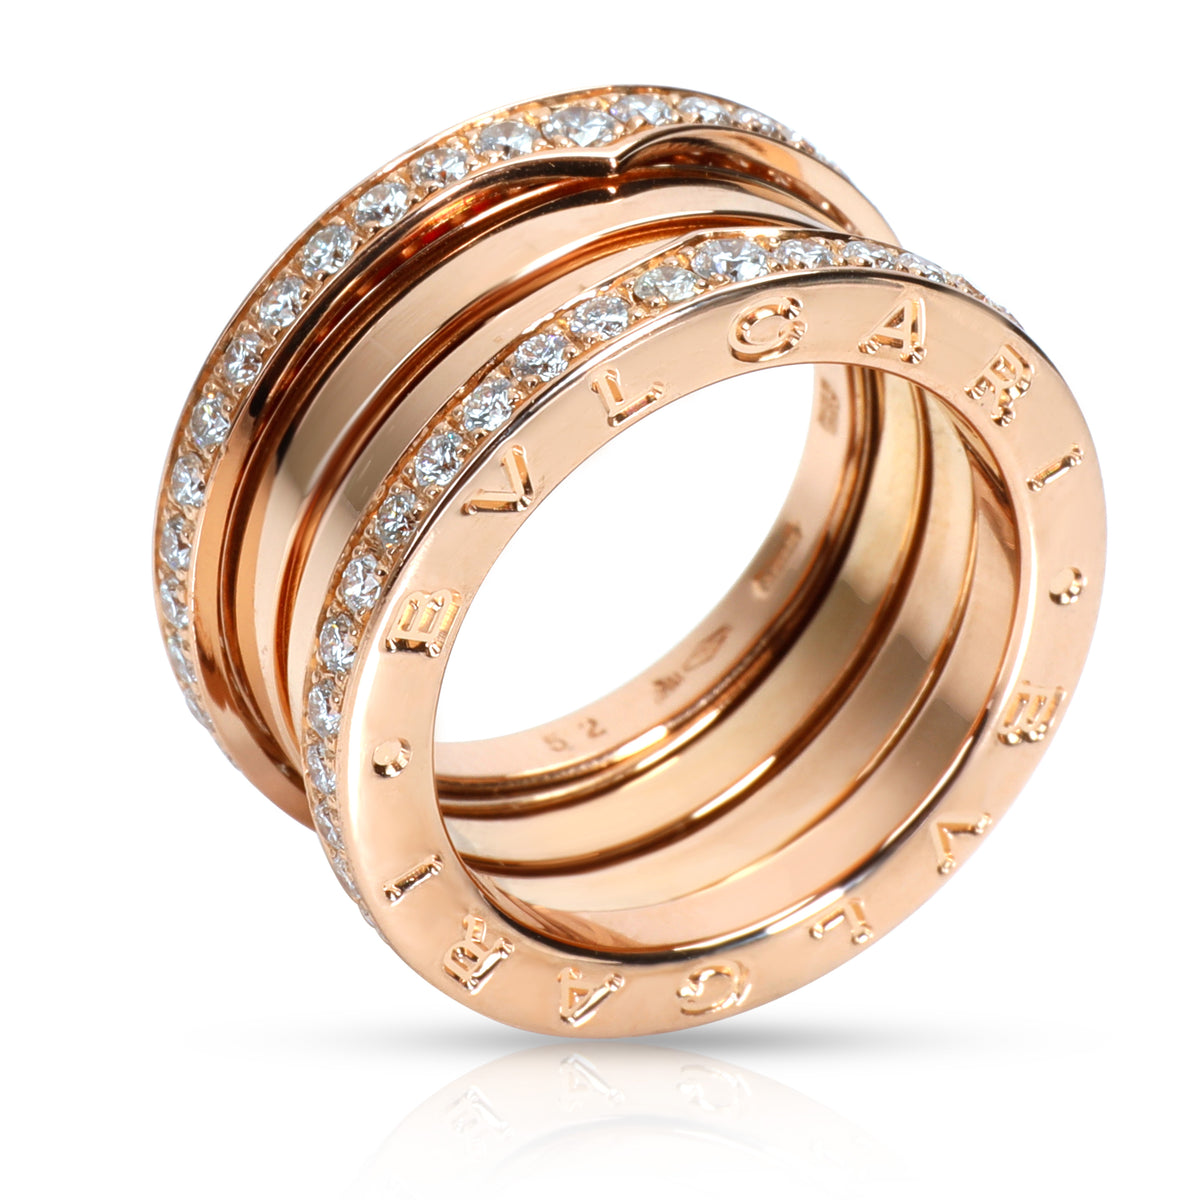 Bulgari B.zero1 Diamond Ring in 18K Rose Gold 1.56 CTW